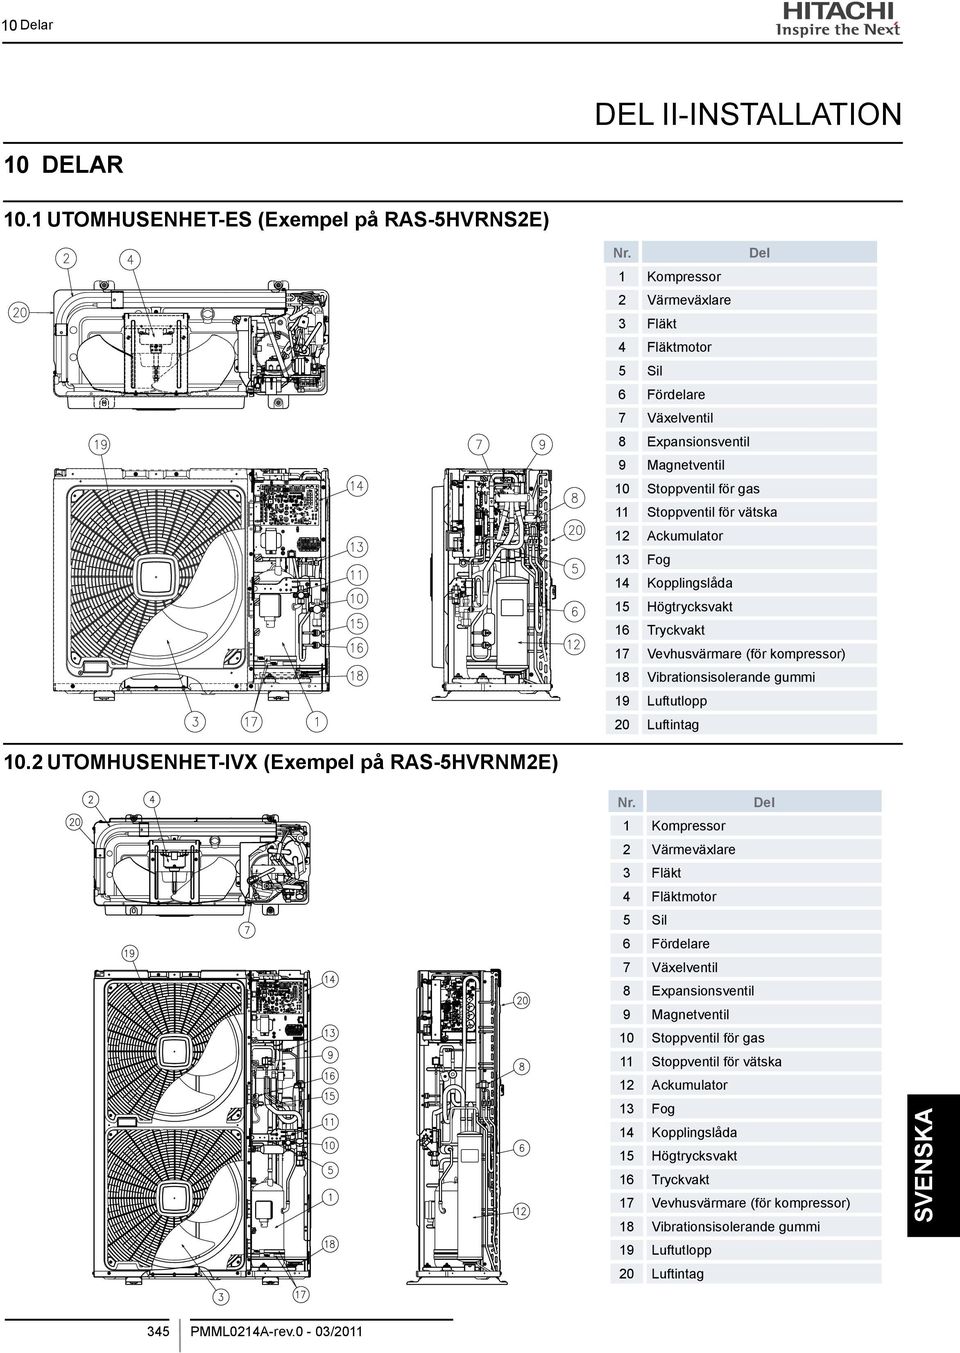 Kopplingslåda 15 Högtrycksvakt 16 Tryckvakt 17 Vevhusvärmare (för kompressor) 18 Vibrationsisolerande gummi 19 Luftutlopp 20 Luftintag 10.2 UTOMHUSENHET-IVX (Exempel på RAS-5HVRNm2E) Nr.